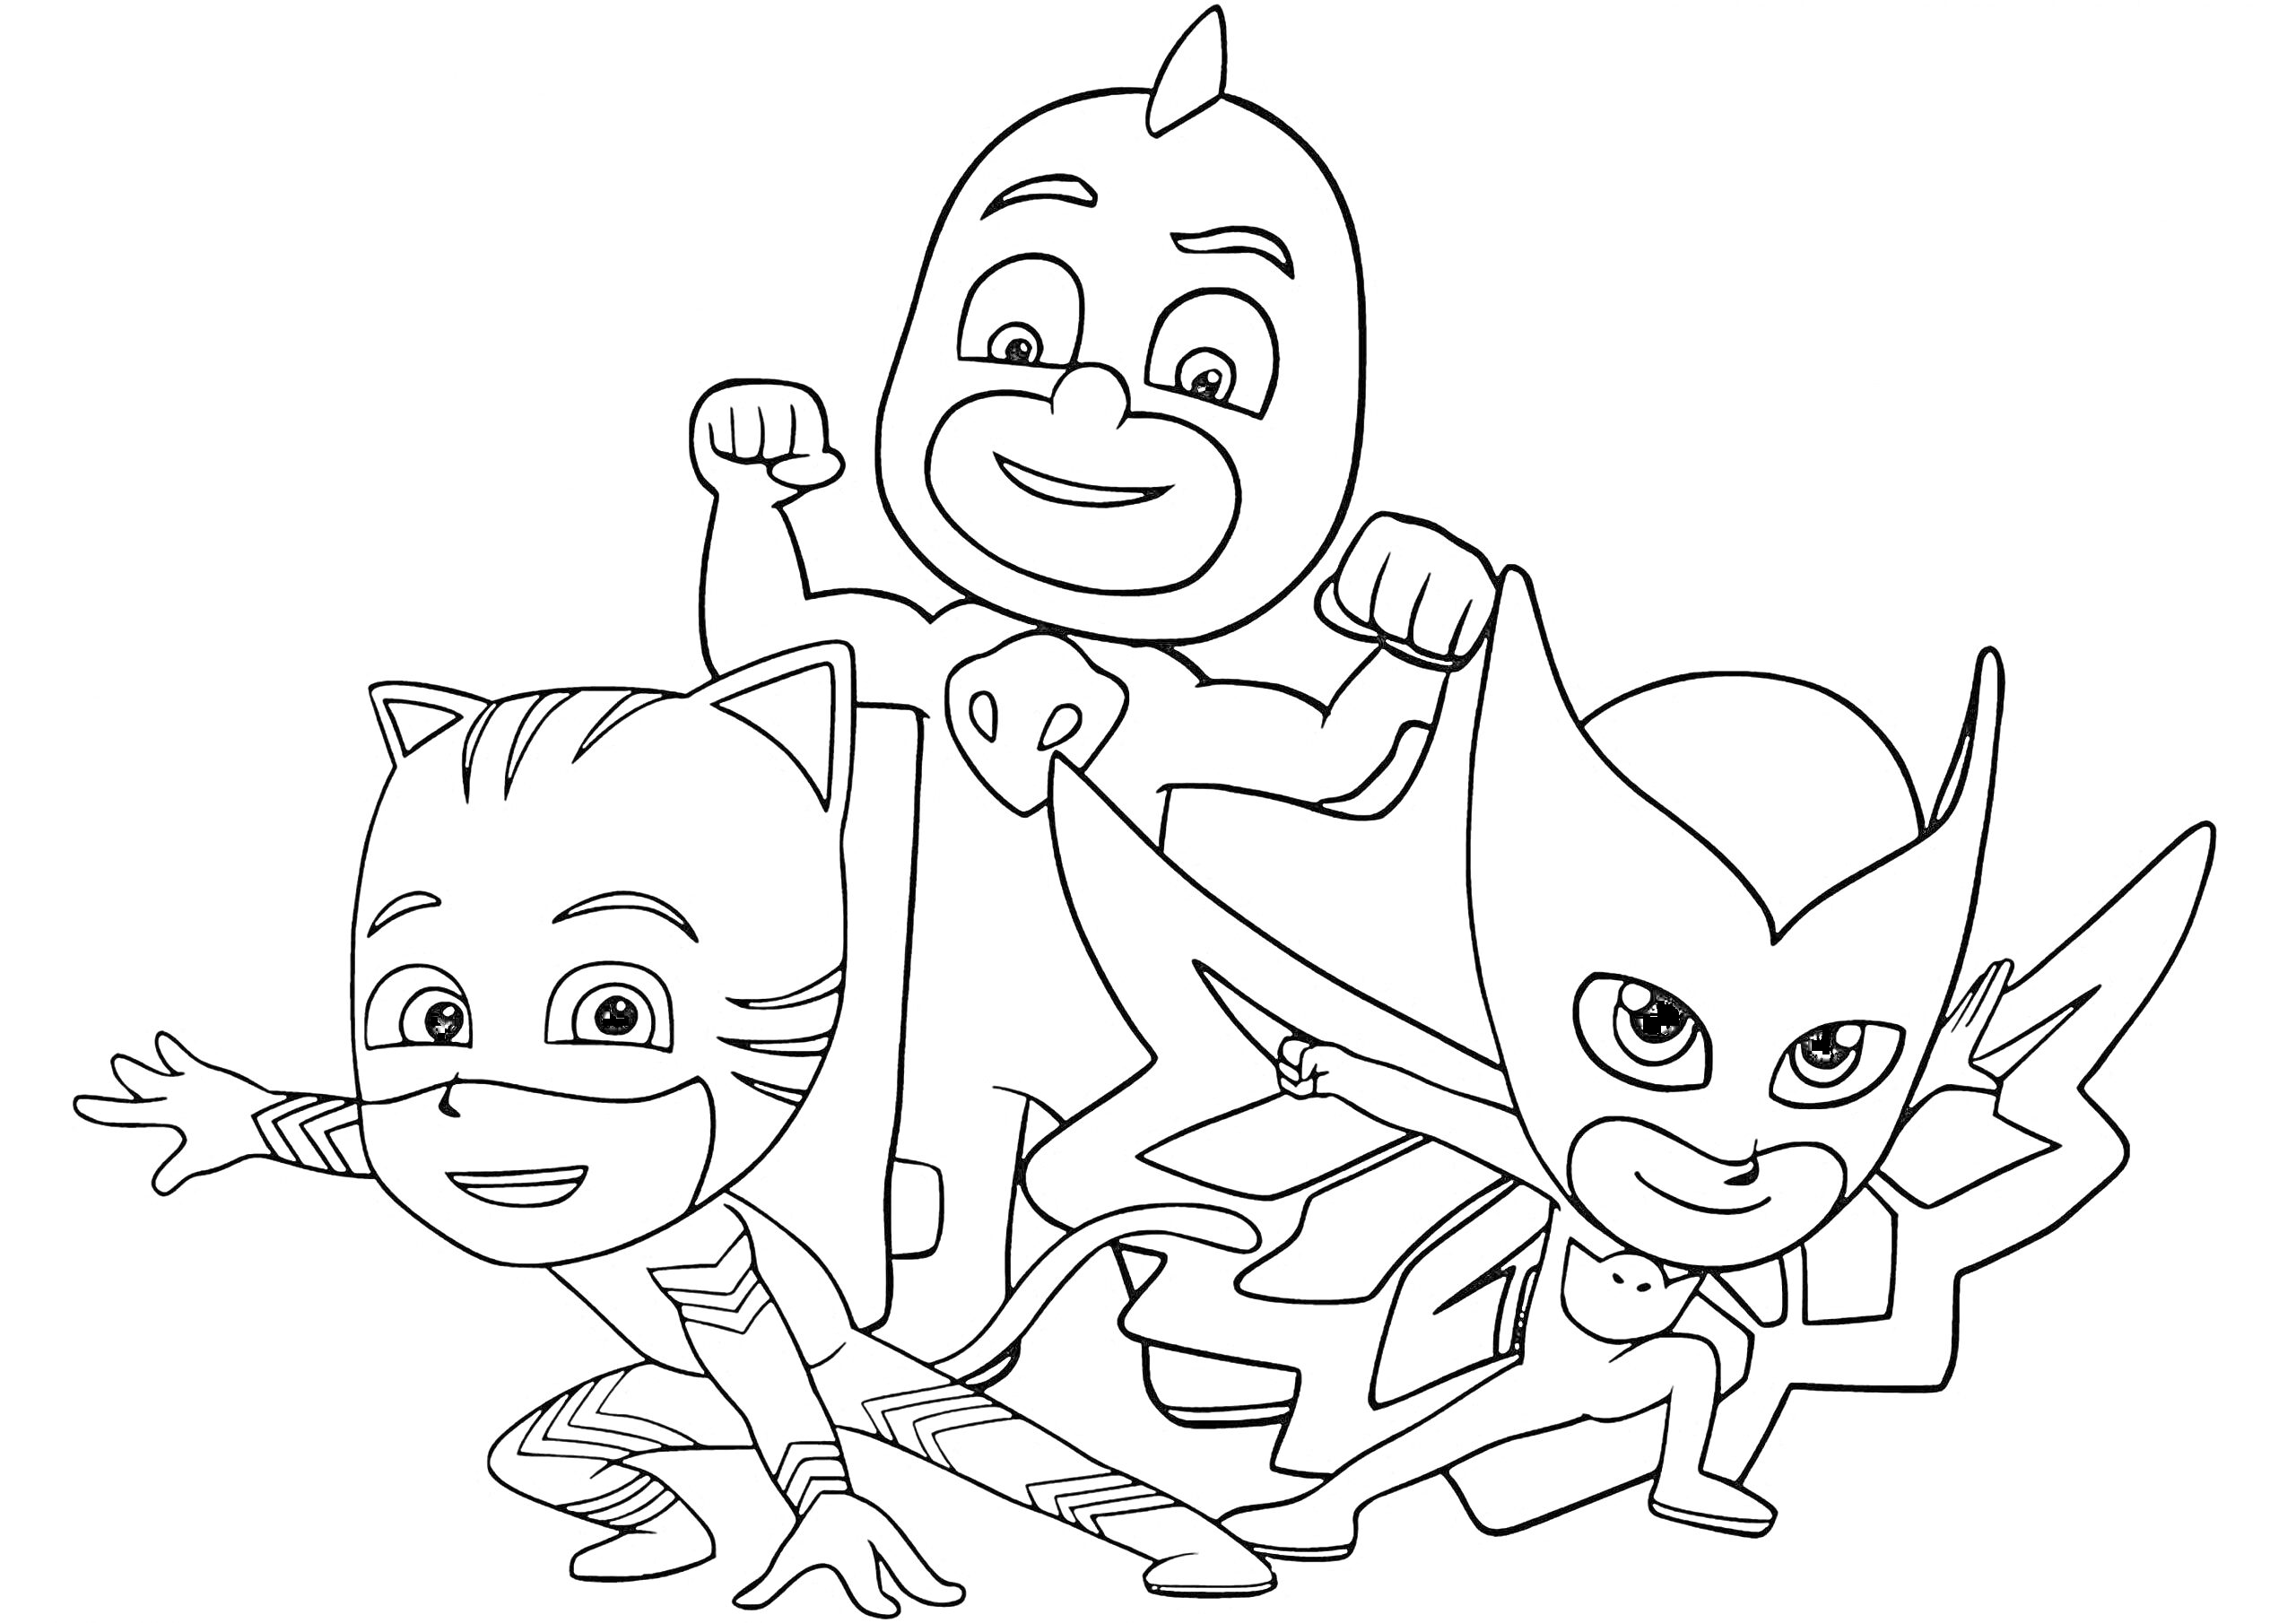 Раскраска Раскраска с тремя героями в масках - котом, совой и ящерицей, стоящими в позах для сражений